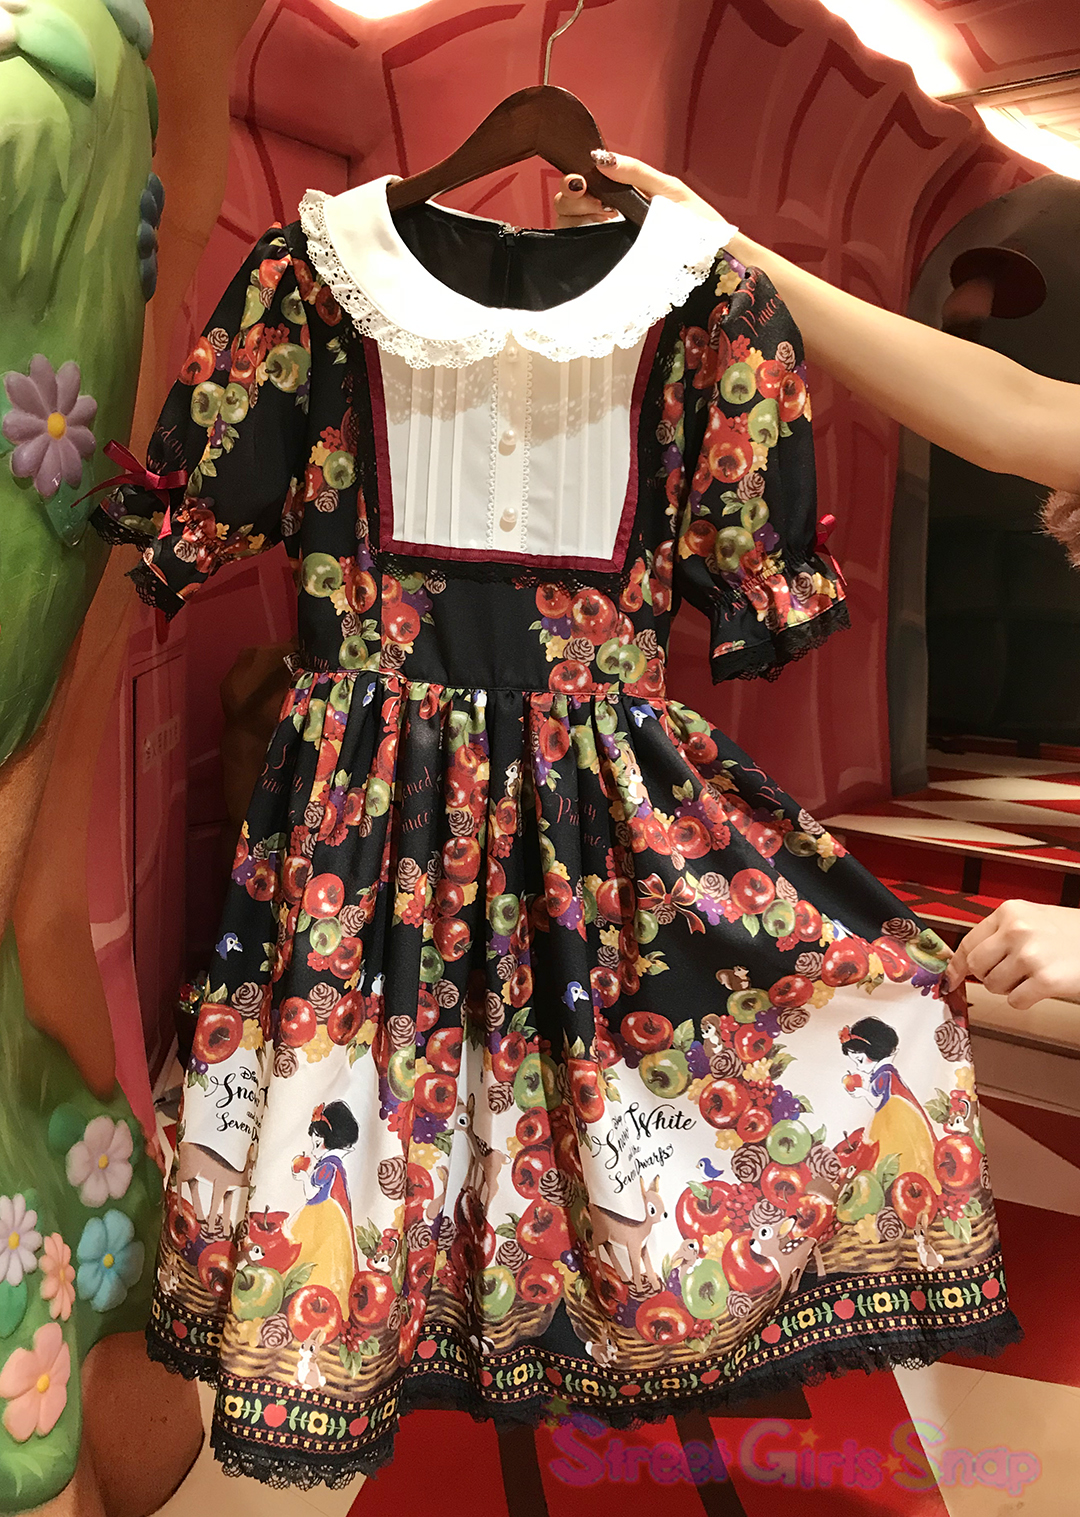 ディズニー映画 白雪姫 の公開80周年を記念したキュートなグッズがディズニーストアに勢ぞろい 渋谷公園通り店も 白雪姫 仕様にデコレーション 画像7 Sgs109